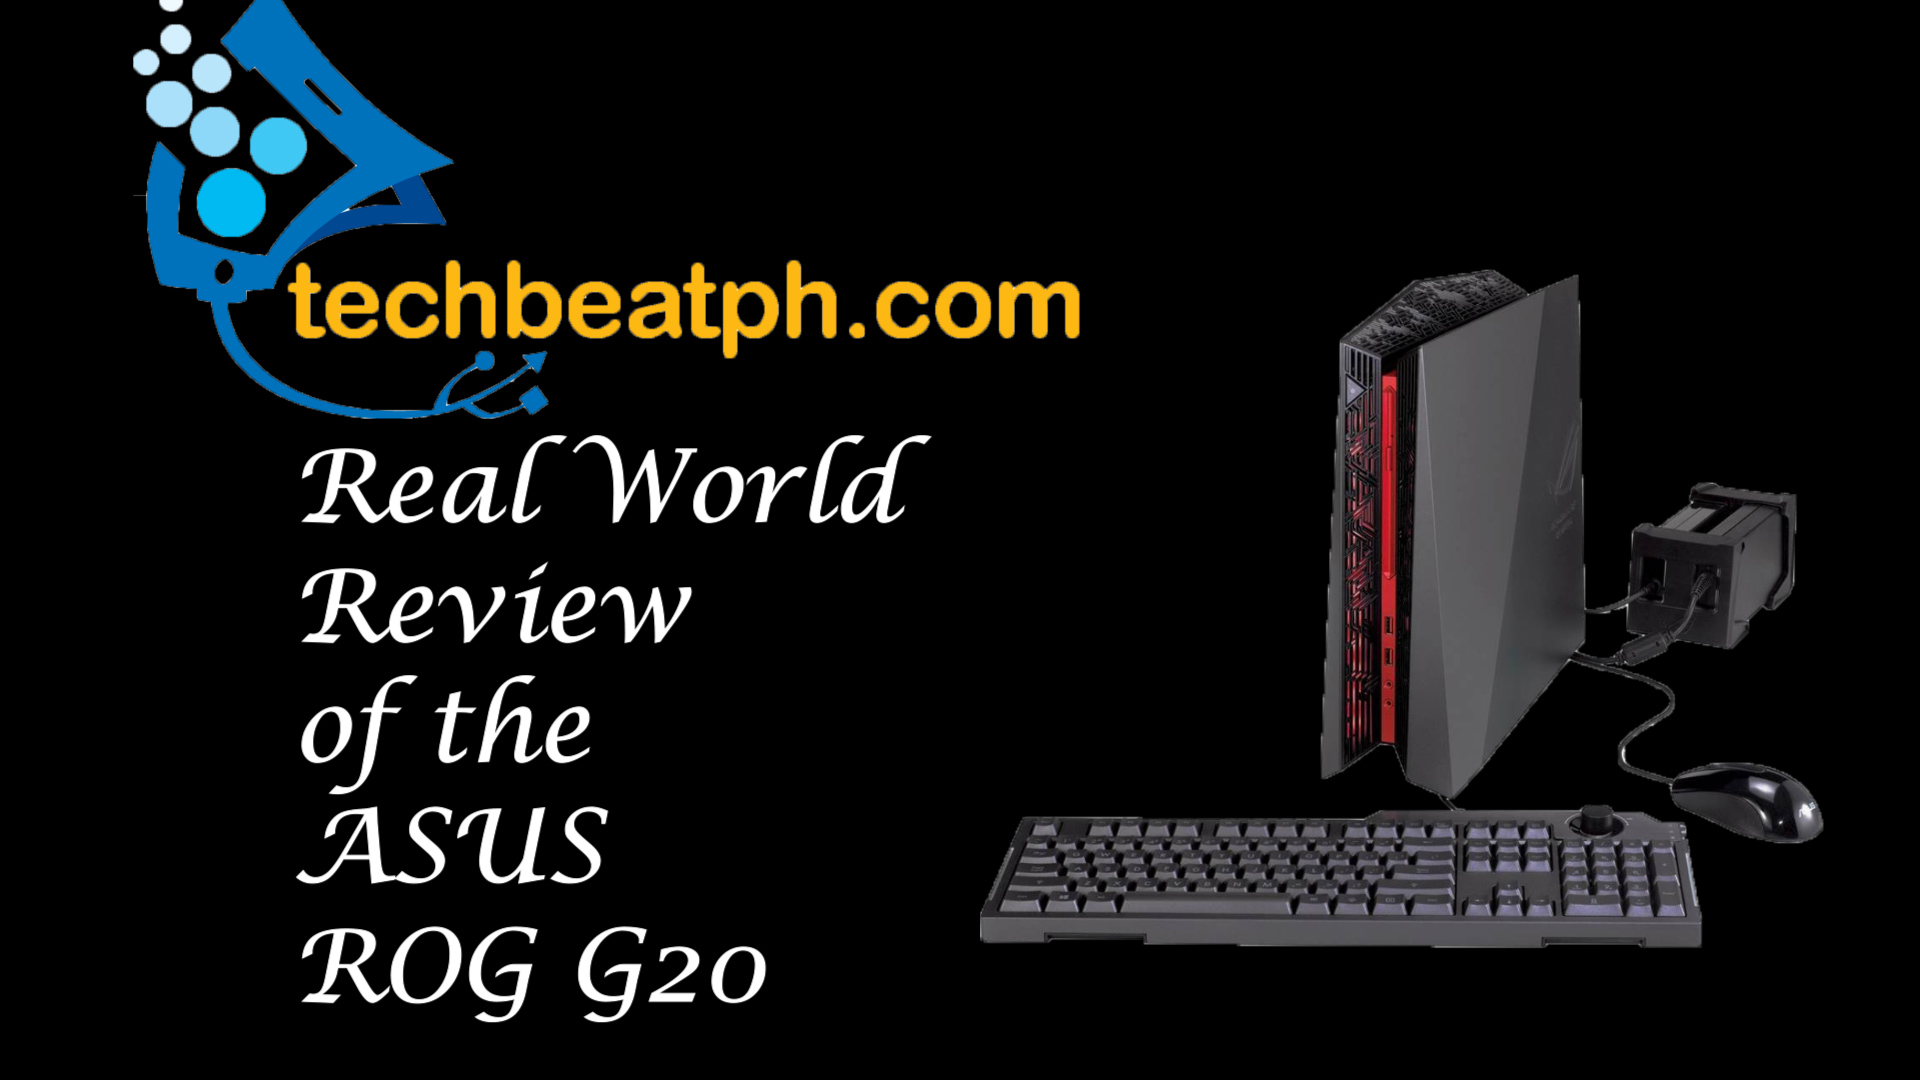 Techbeatph.com Reviews: ASUS ROG G20